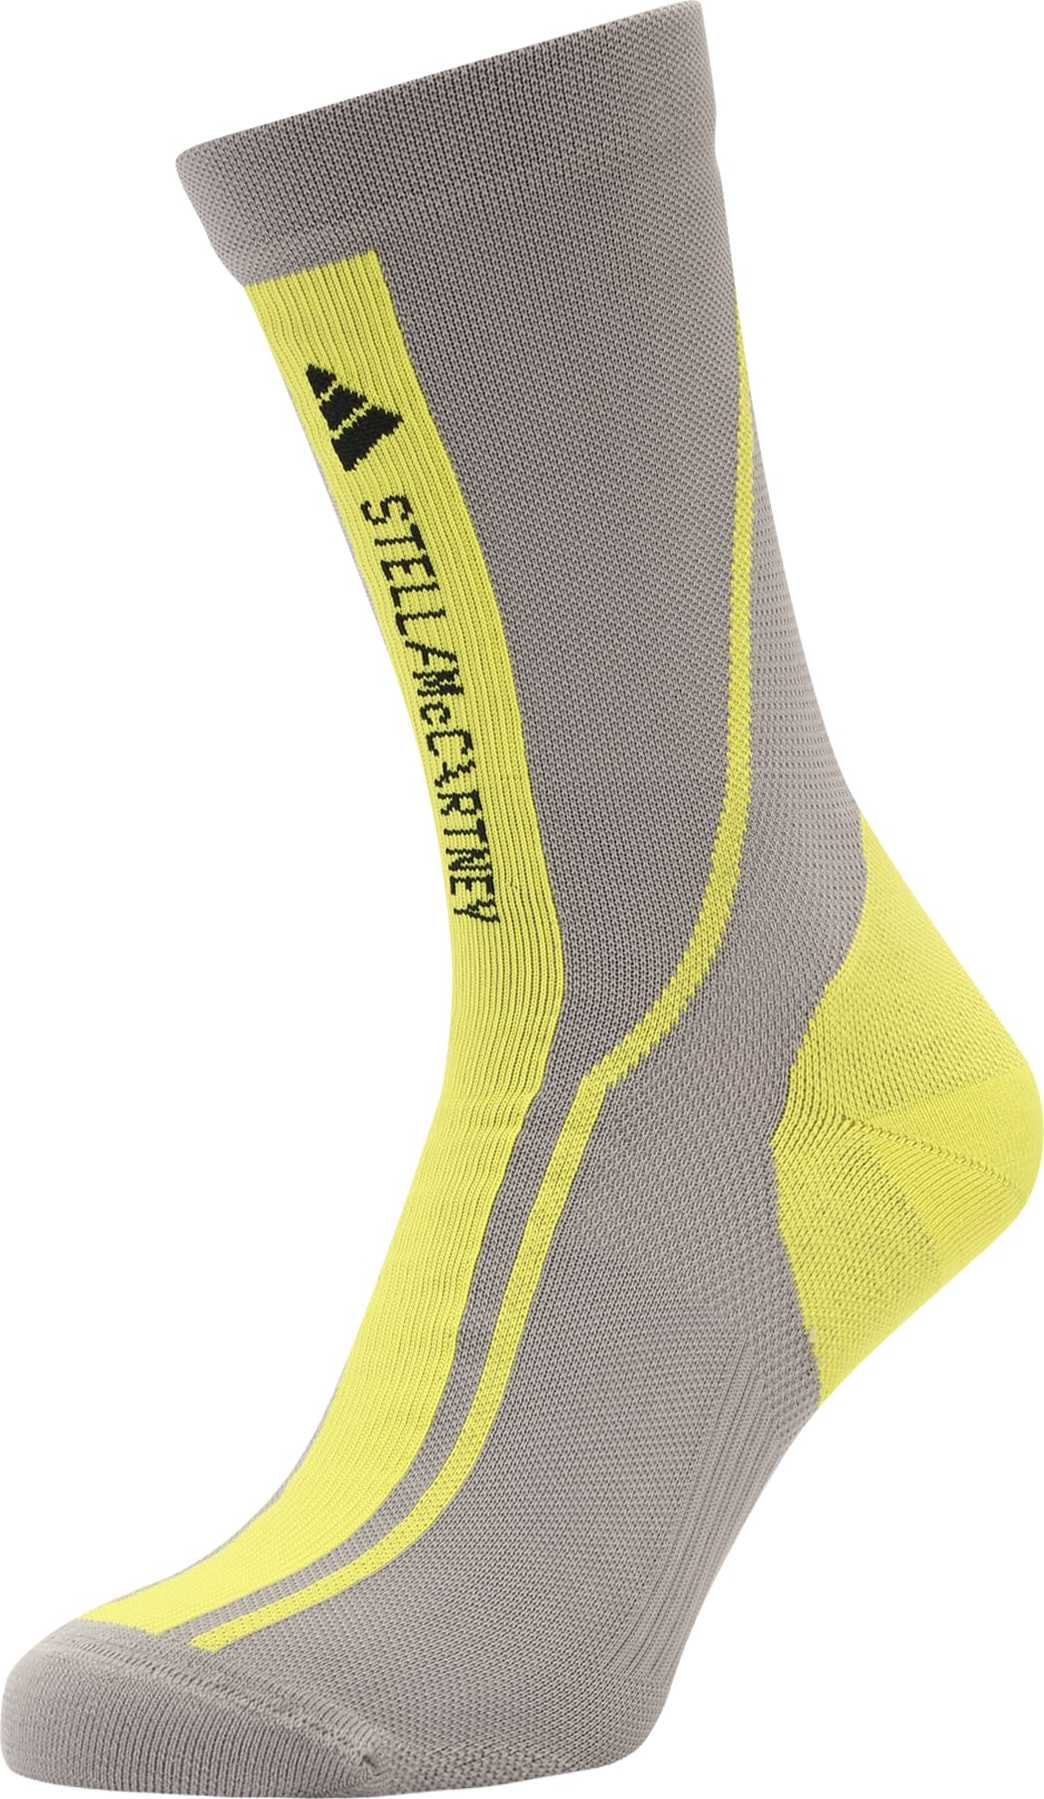 ADIDAS BY STELLA MCCARTNEY Sportovní ponožky žlutá / režná / černá